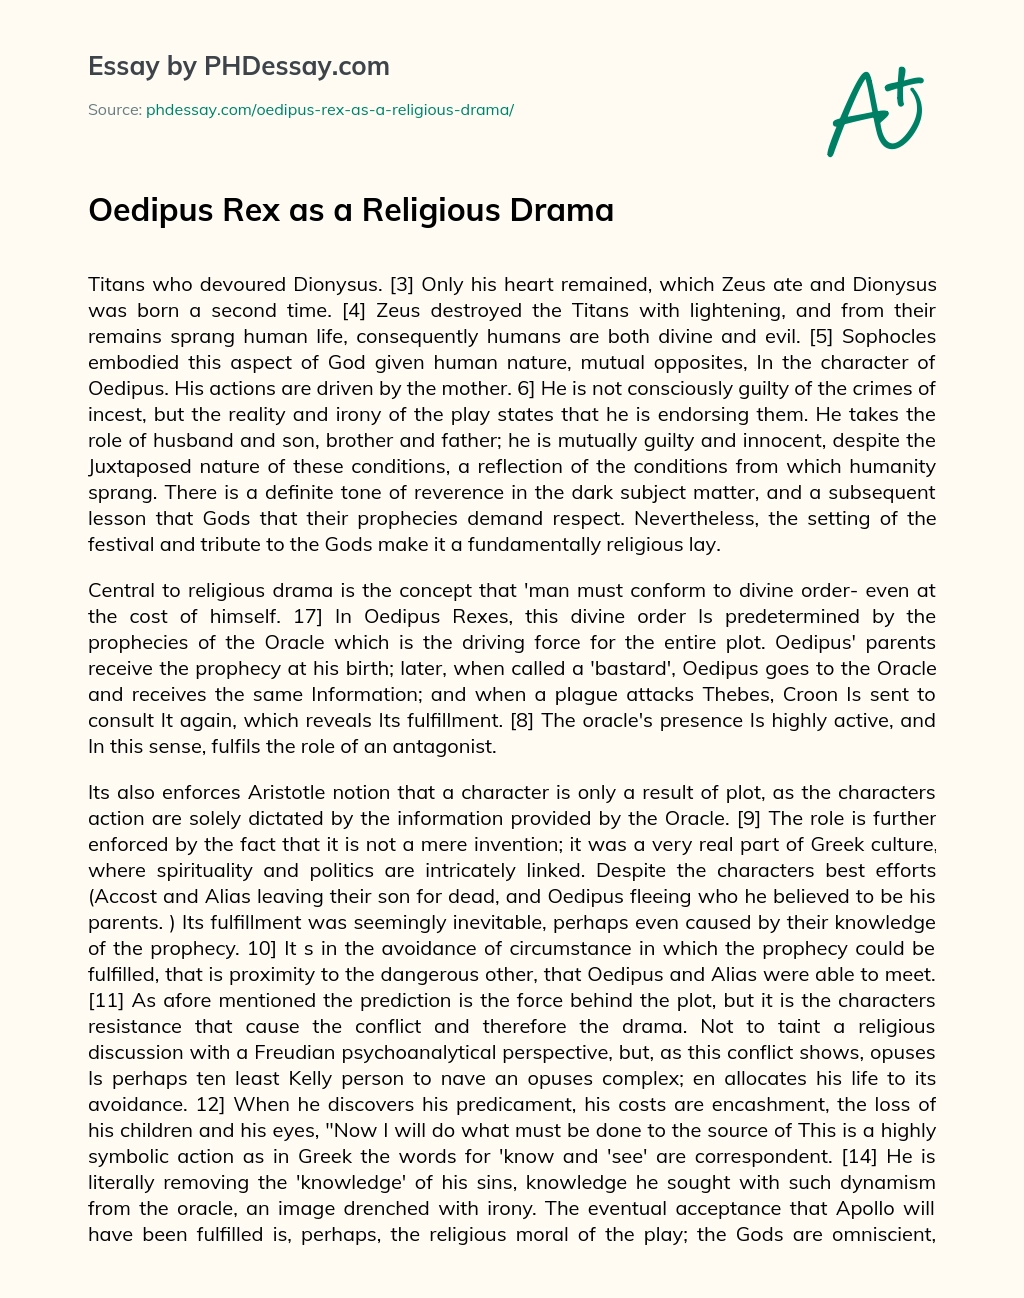 Oedipus Rex as a Religious Drama essay